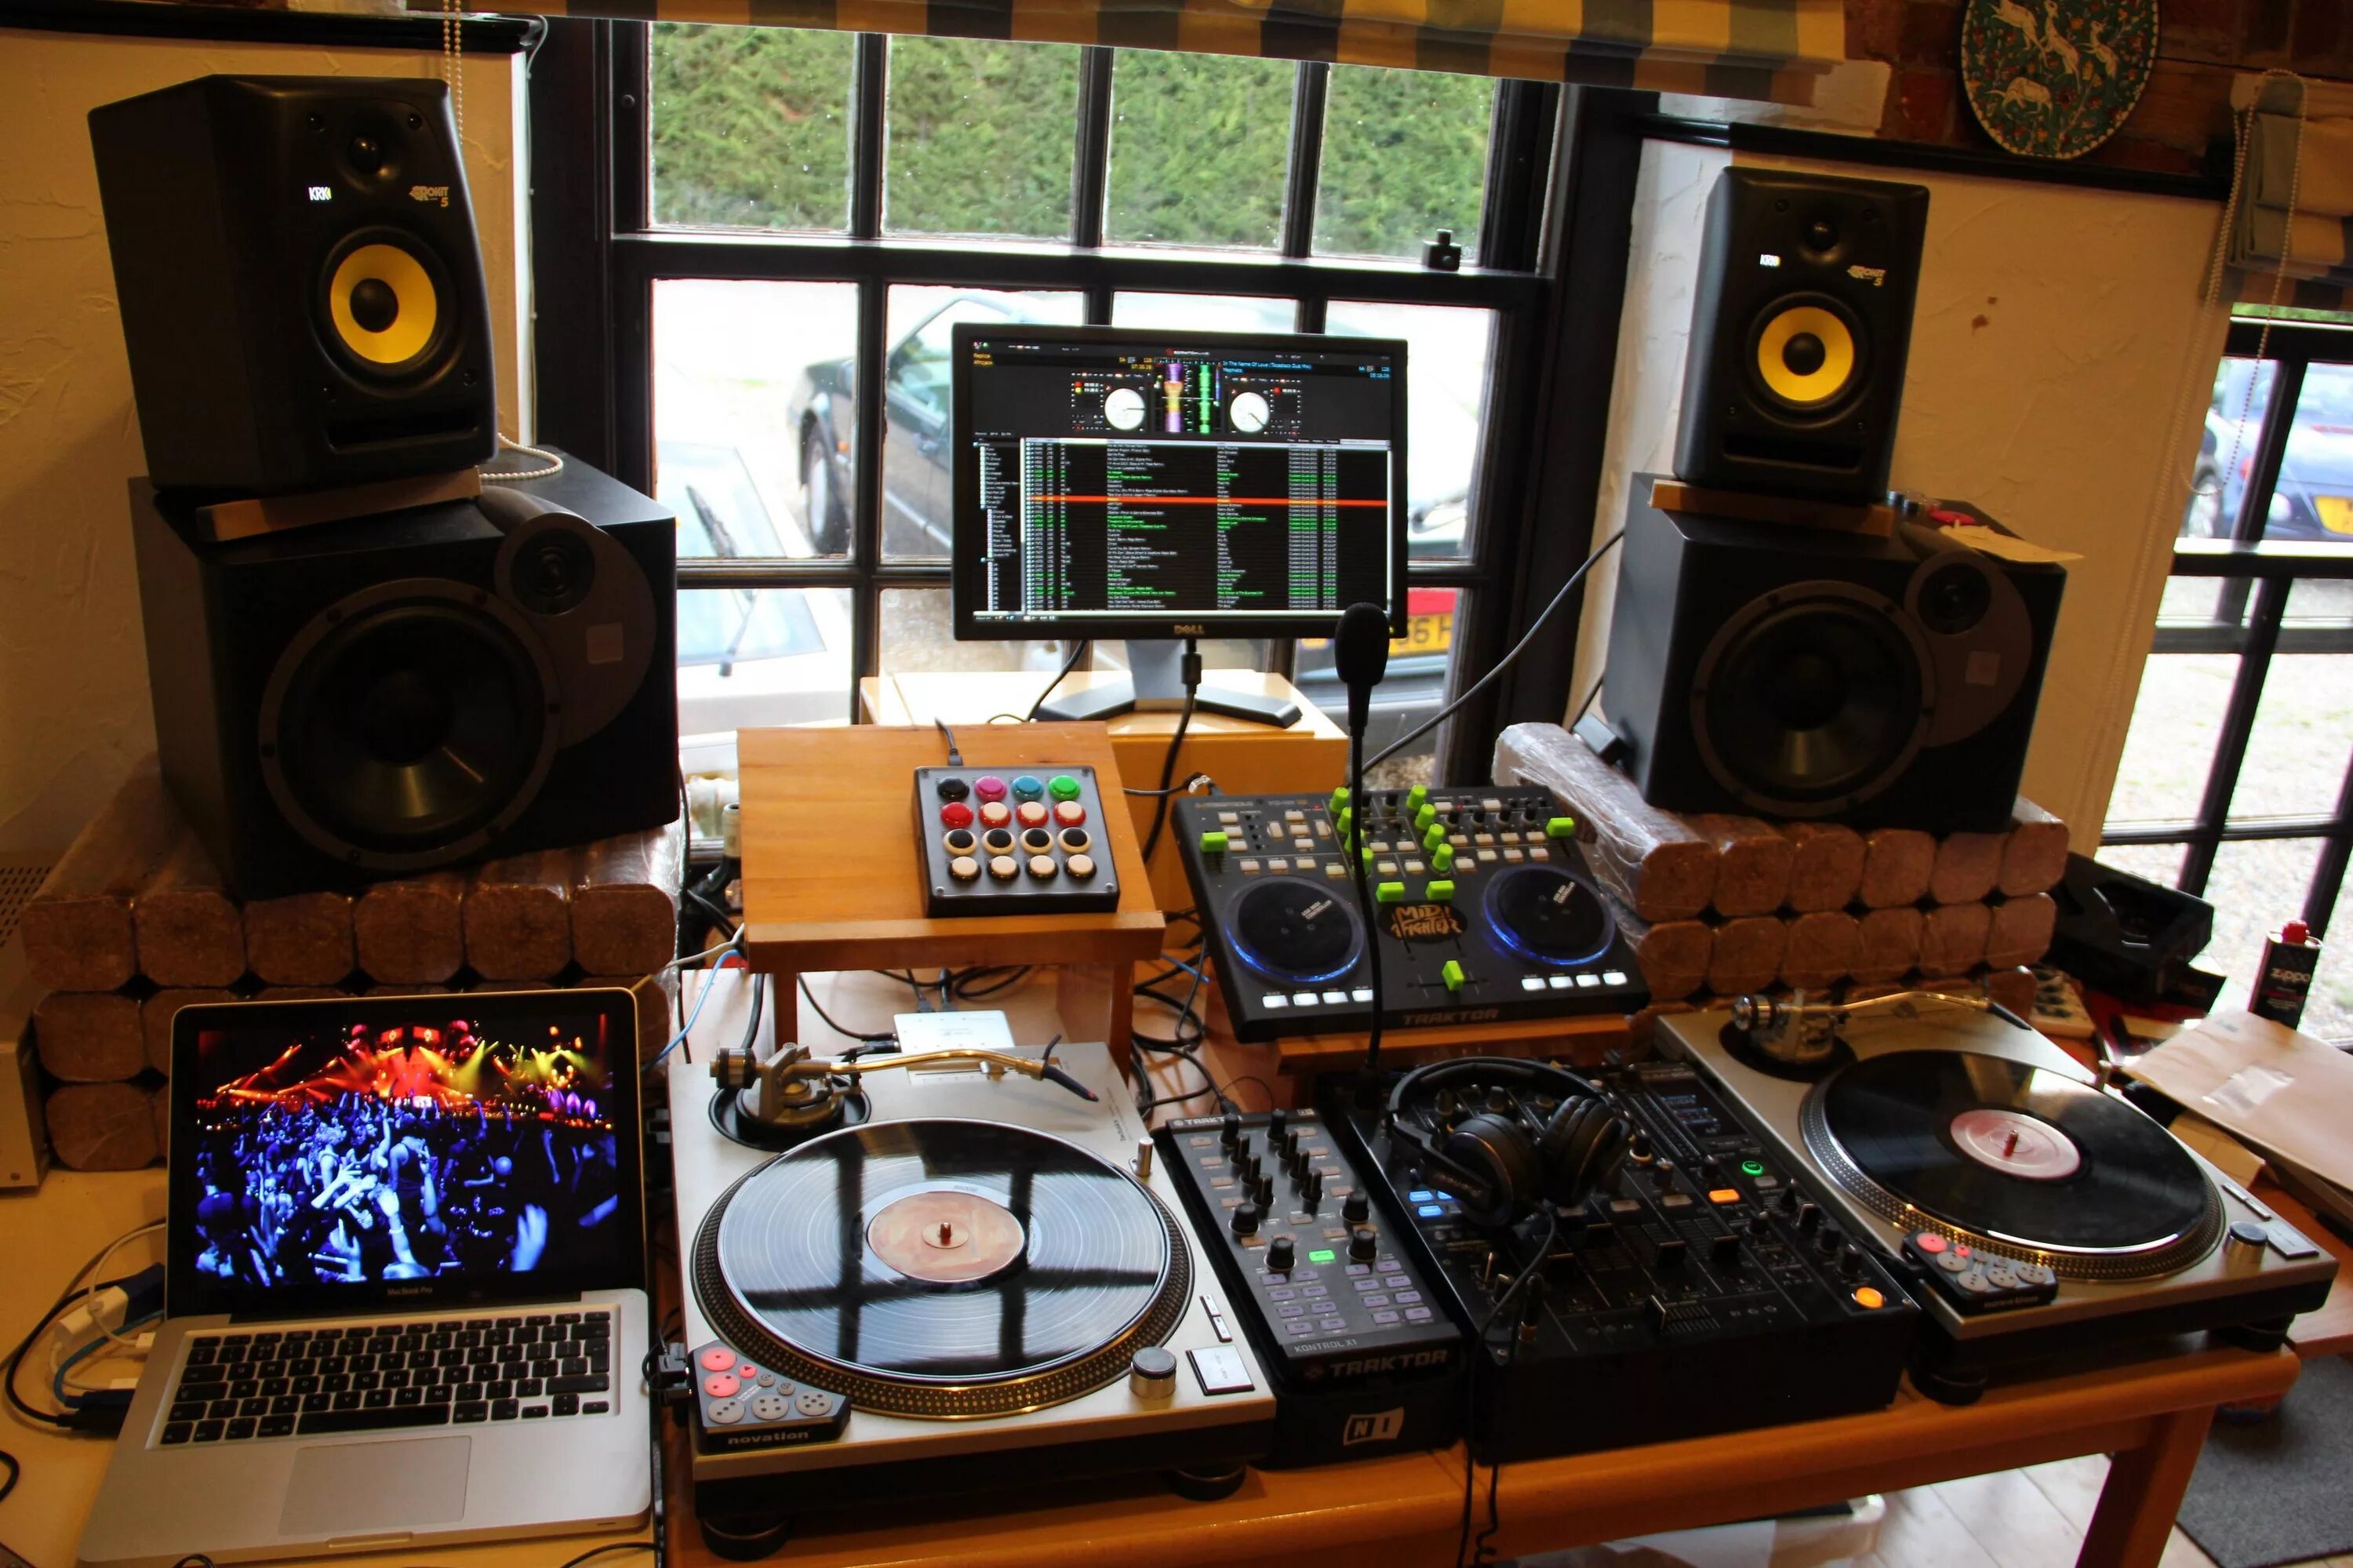 Студия звукозаписи Krk 5. Krk s10.4 студия звукозаписи. Звукозаписывающая аппаратура с комплектом акустических систем. Оборудование для музыкальной студии.